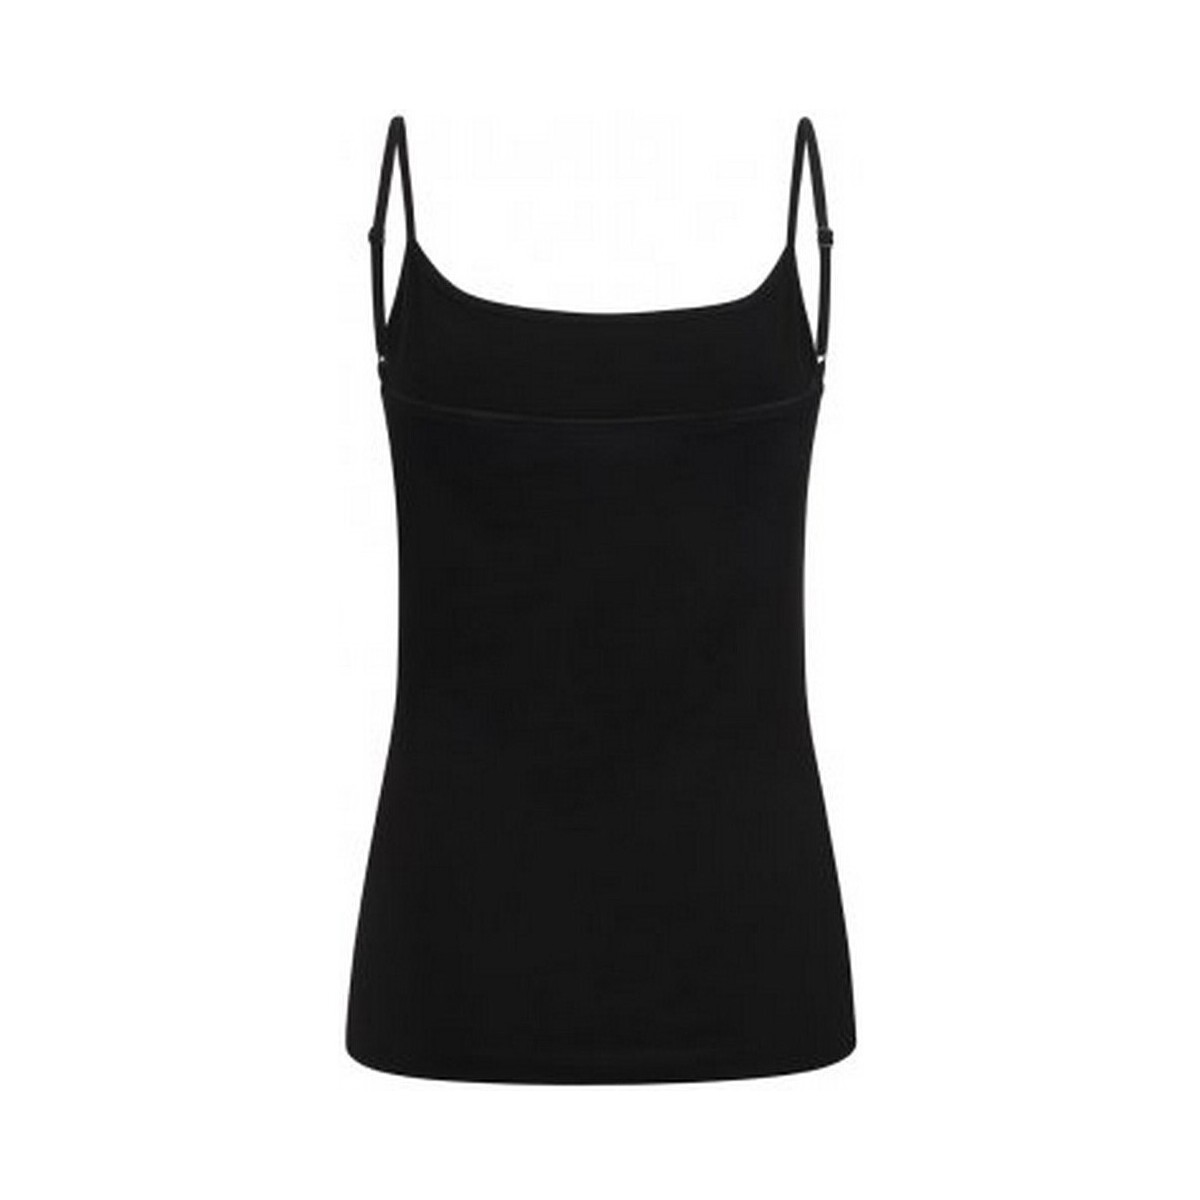 Vêtements Femme Débardeurs / T-shirts sans manche Skinni Fit SK126 Noir